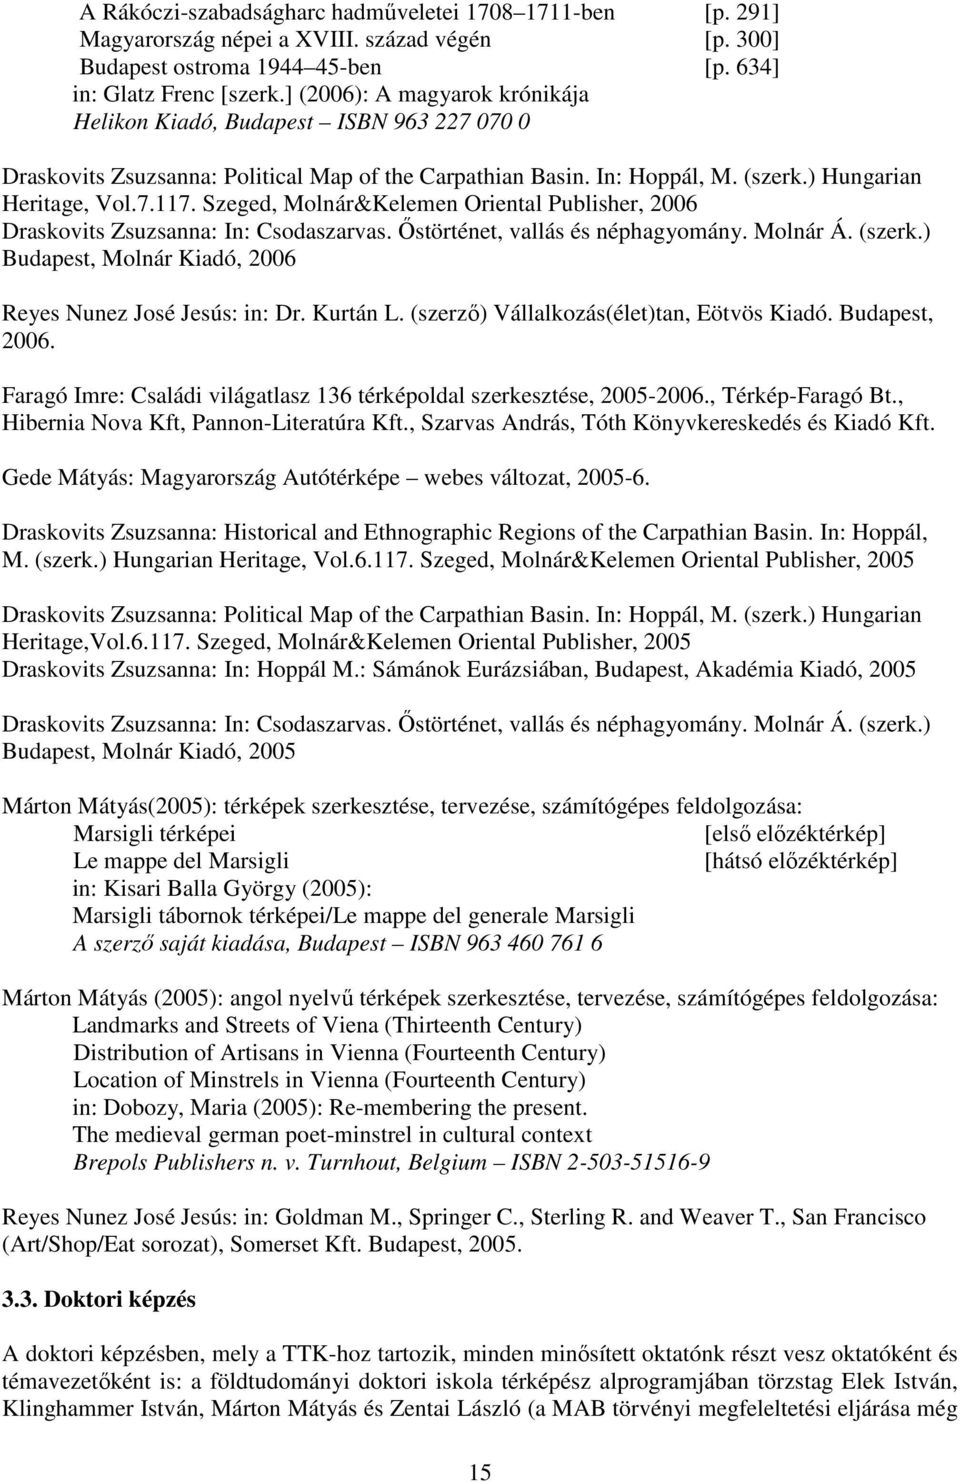 Szeged, Molnár&Kelemen Oriental Publisher, 2006 Draskovits Zsuzsanna: In: Csodaszarvas. Őstörténet, vallás és néphagyomány. Molnár Á. (szerk.